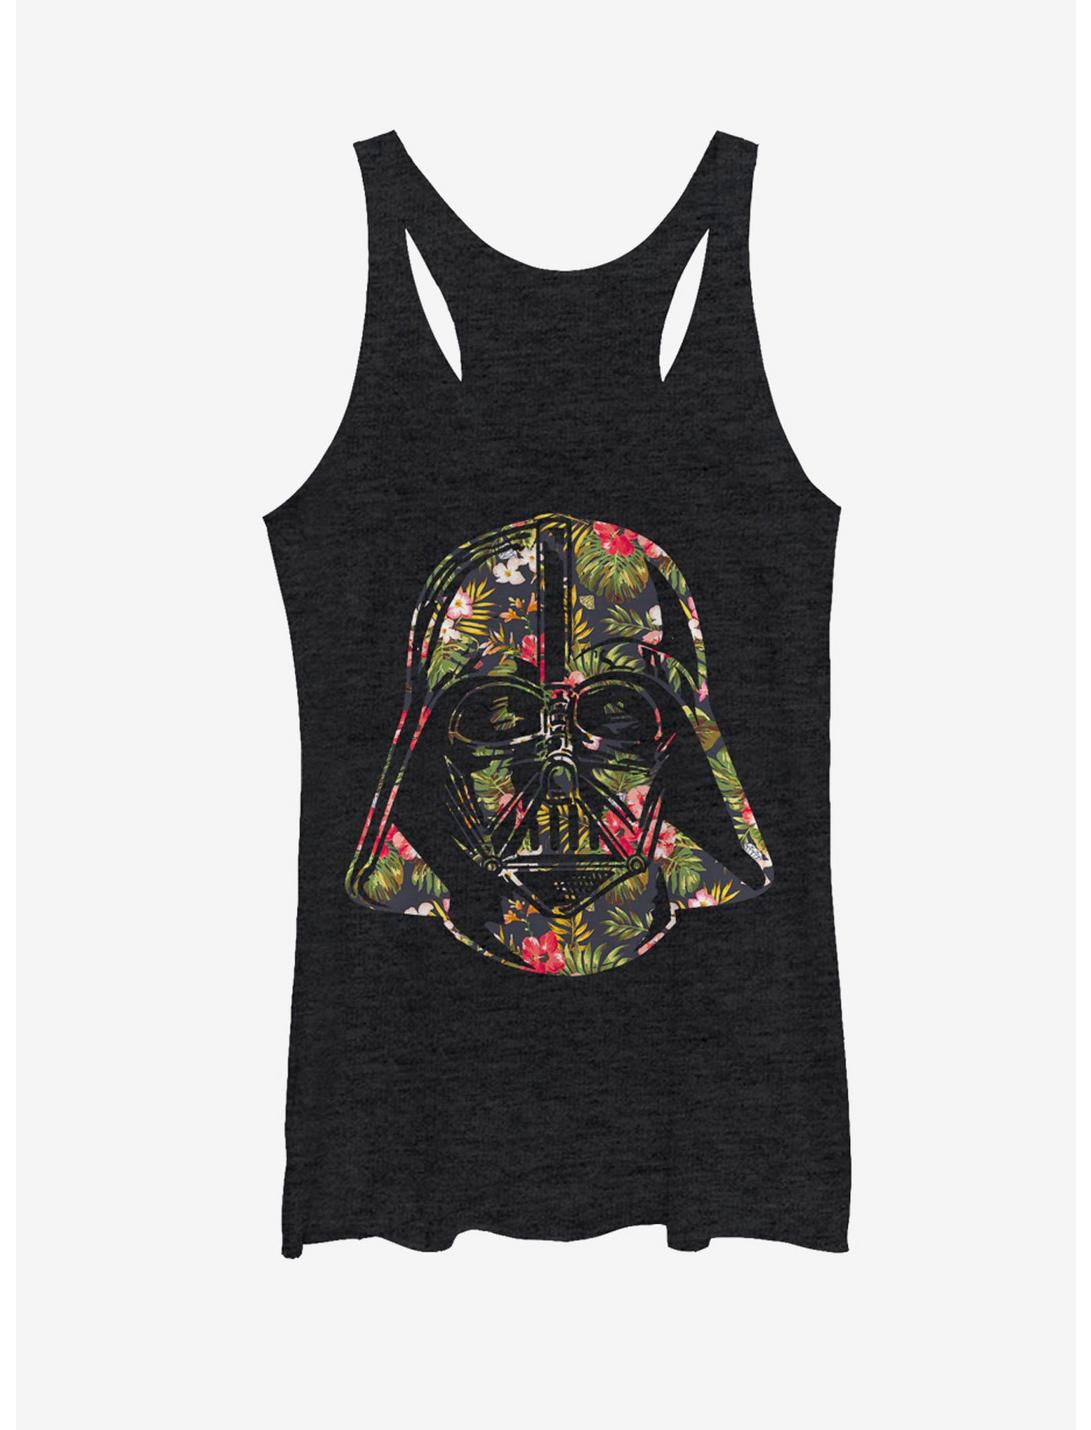 Star Wars Tropical Print Darth Vader Helmet Womens Tank Top, BLK HTR, hi-res